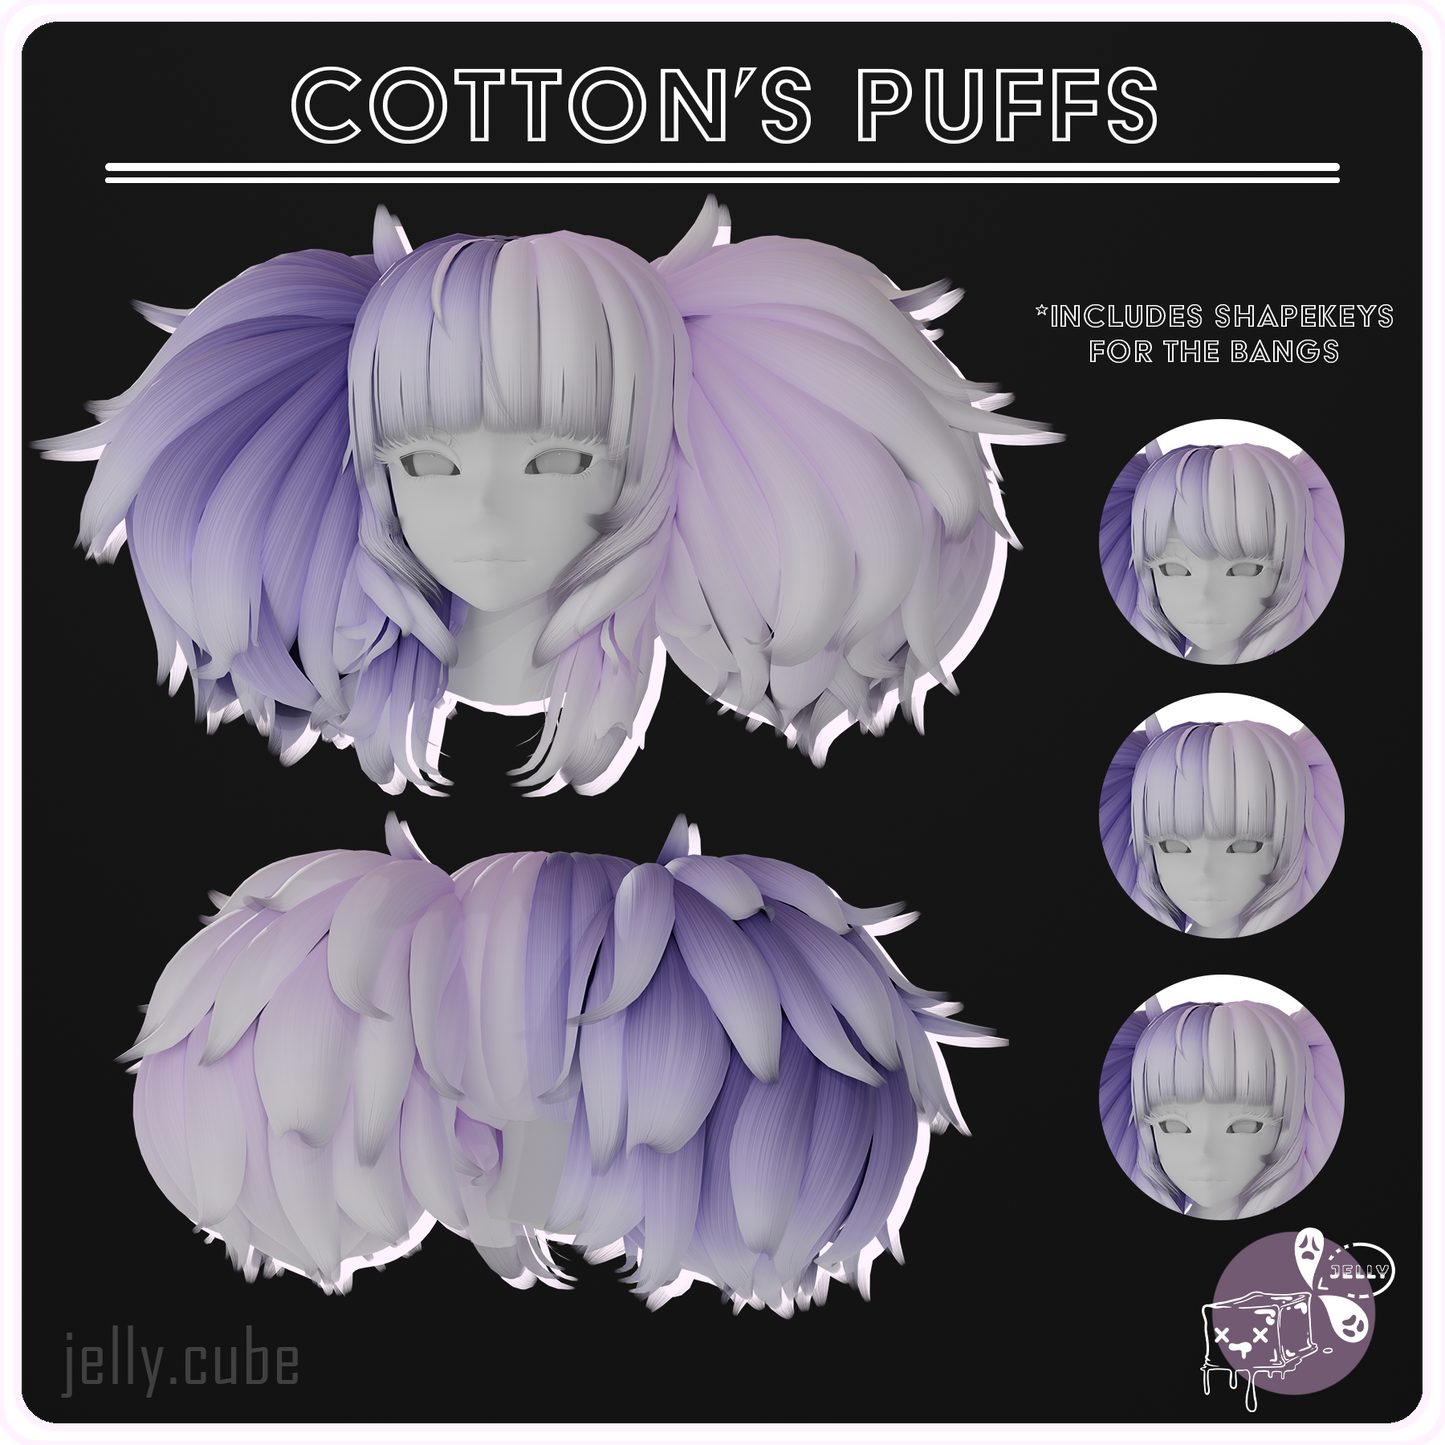 Cotton's Puffs